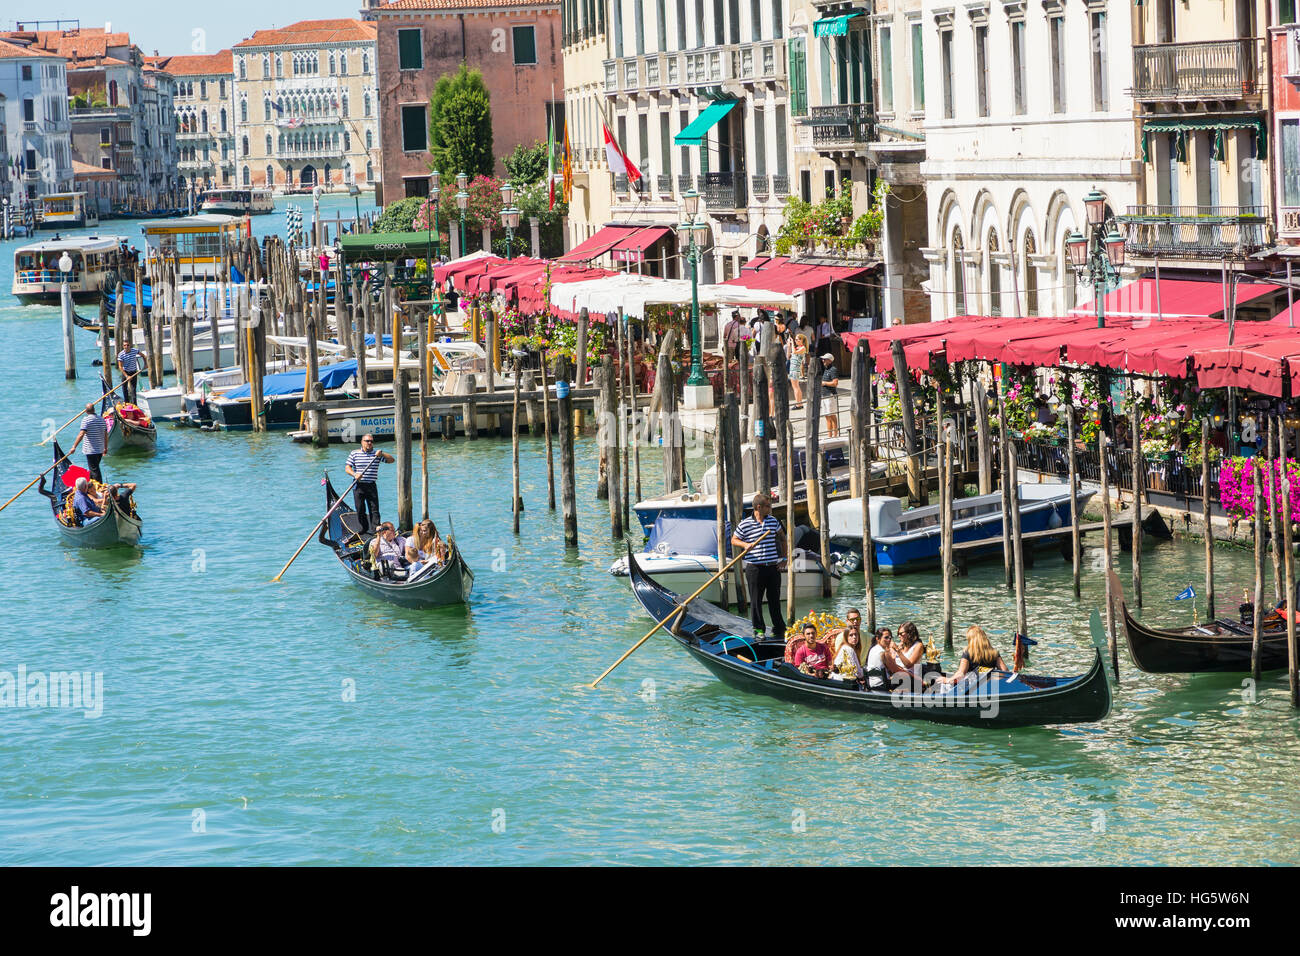 Venezia,Italy-August 17,2014:vista di una famosa gondole con turisti sul Canal Grande di Venezia durante un giorno d'estate. Foto Stock